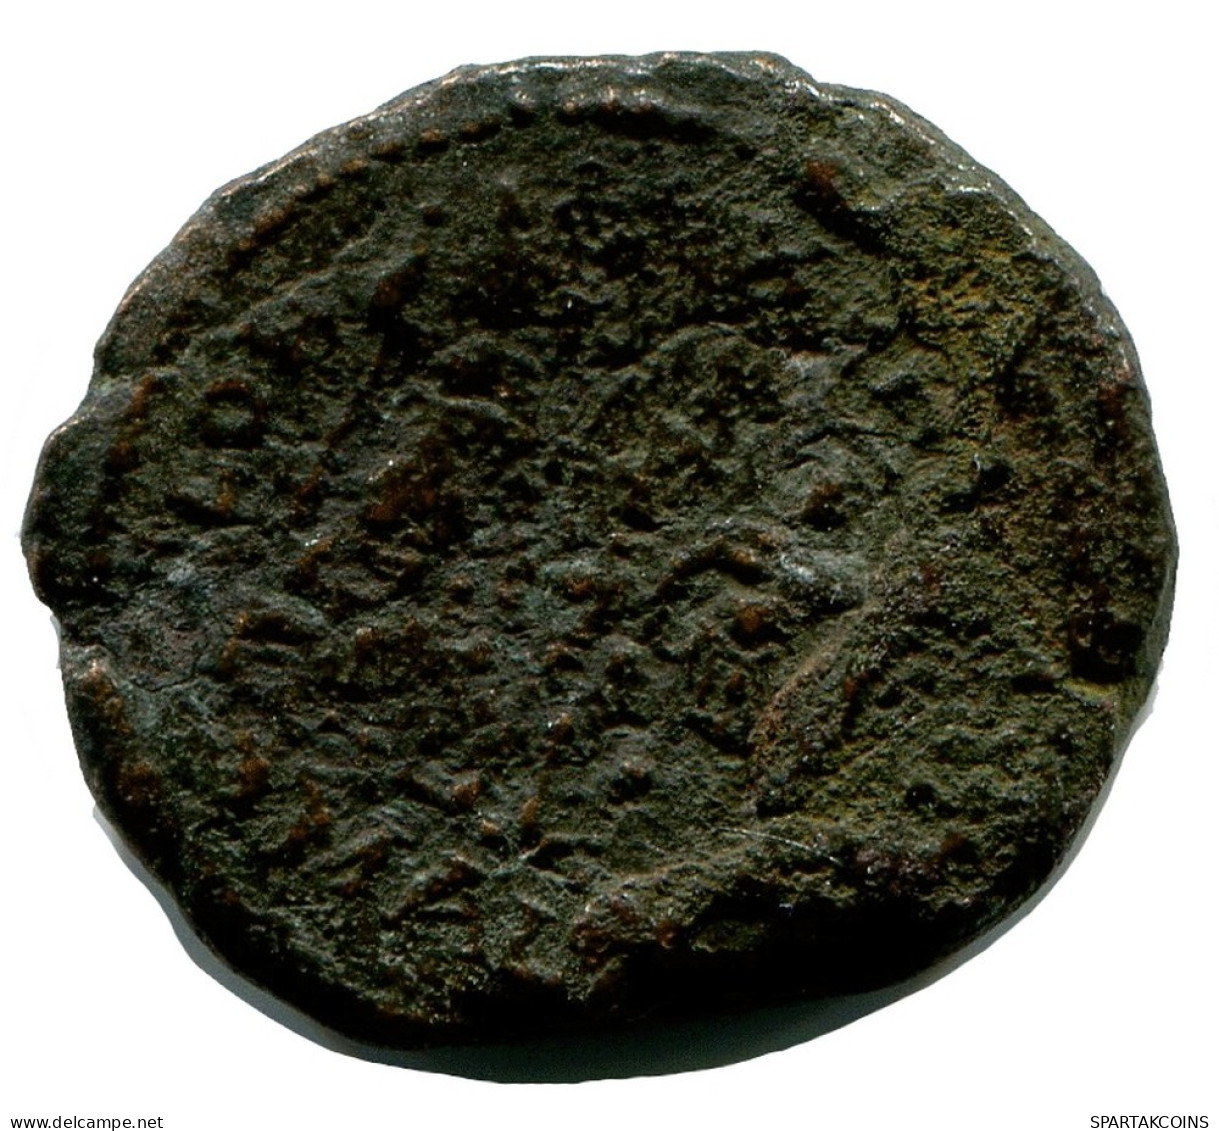 ROMAN Coin MINTED IN ALEKSANDRIA FOUND IN IHNASYAH HOARD EGYPT #ANC10176.14.U.A - L'Empire Chrétien (307 à 363)